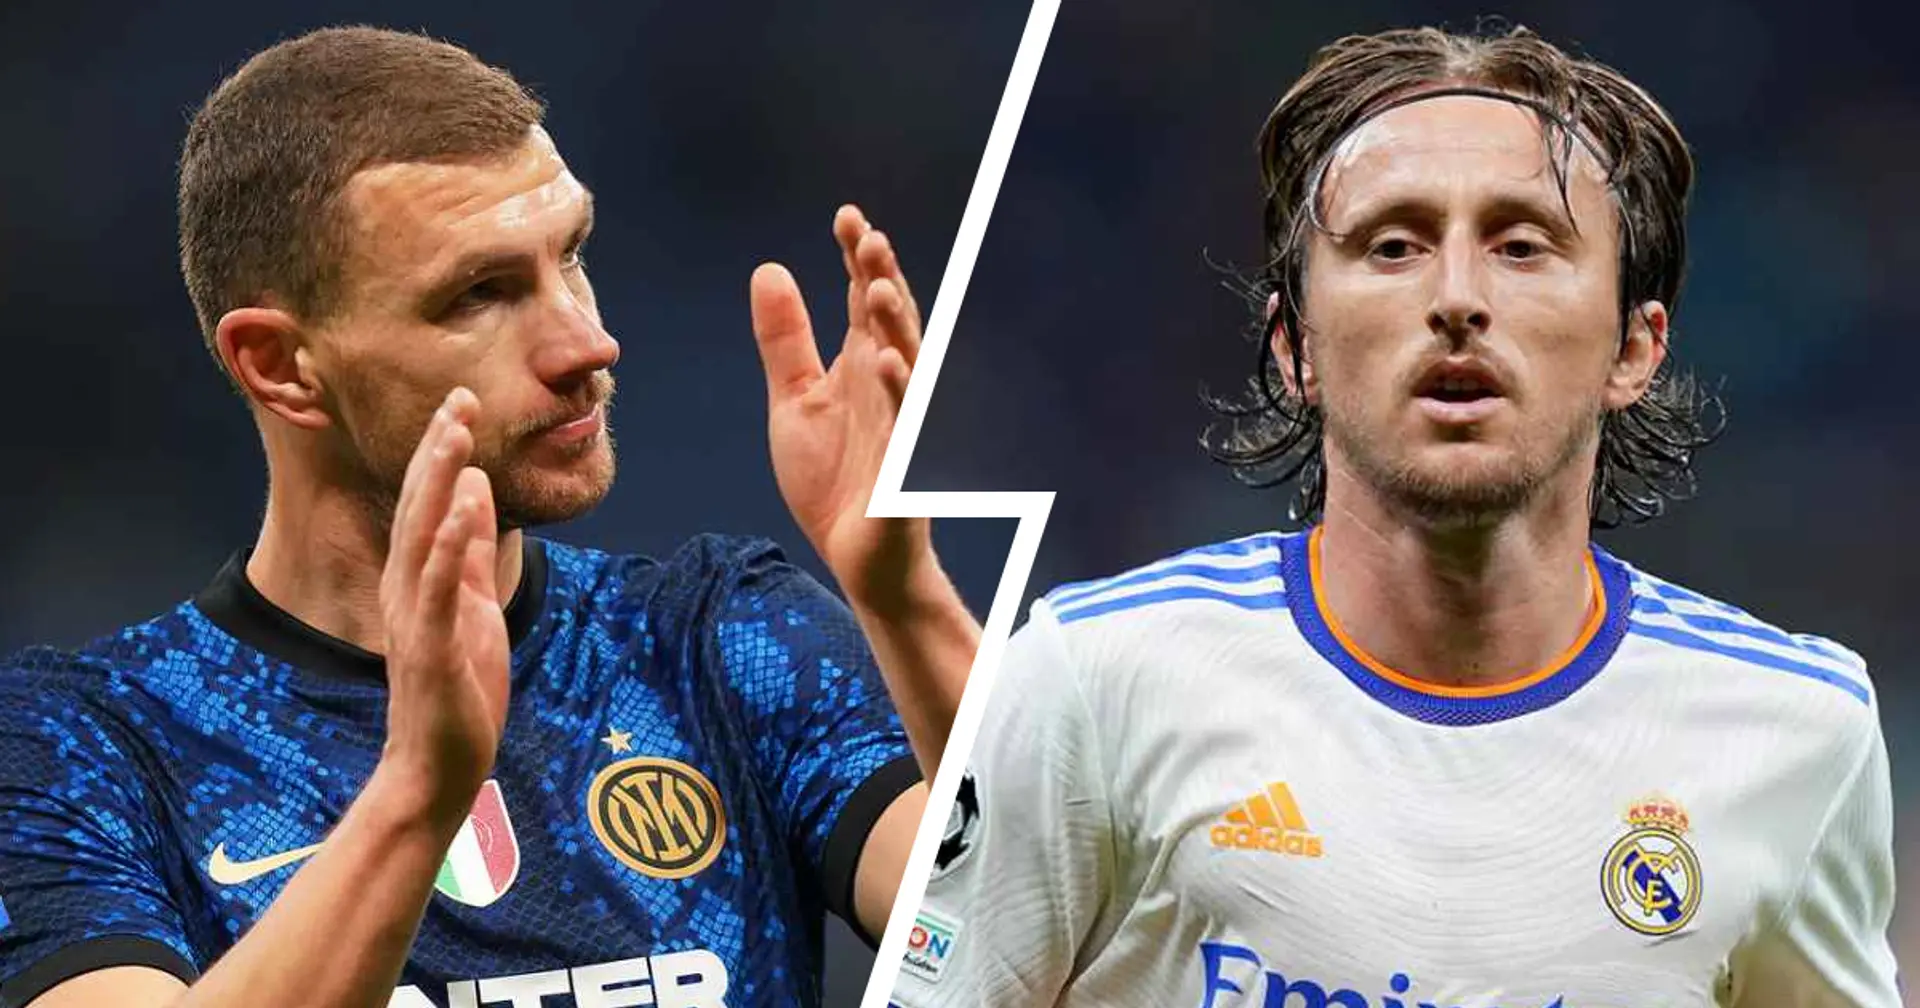 Solo l'ex Pallone d'Oro Modric meglio di Dzeko in Europa: la statistica che esalta il lavoro dell'attaccante dell'Inter